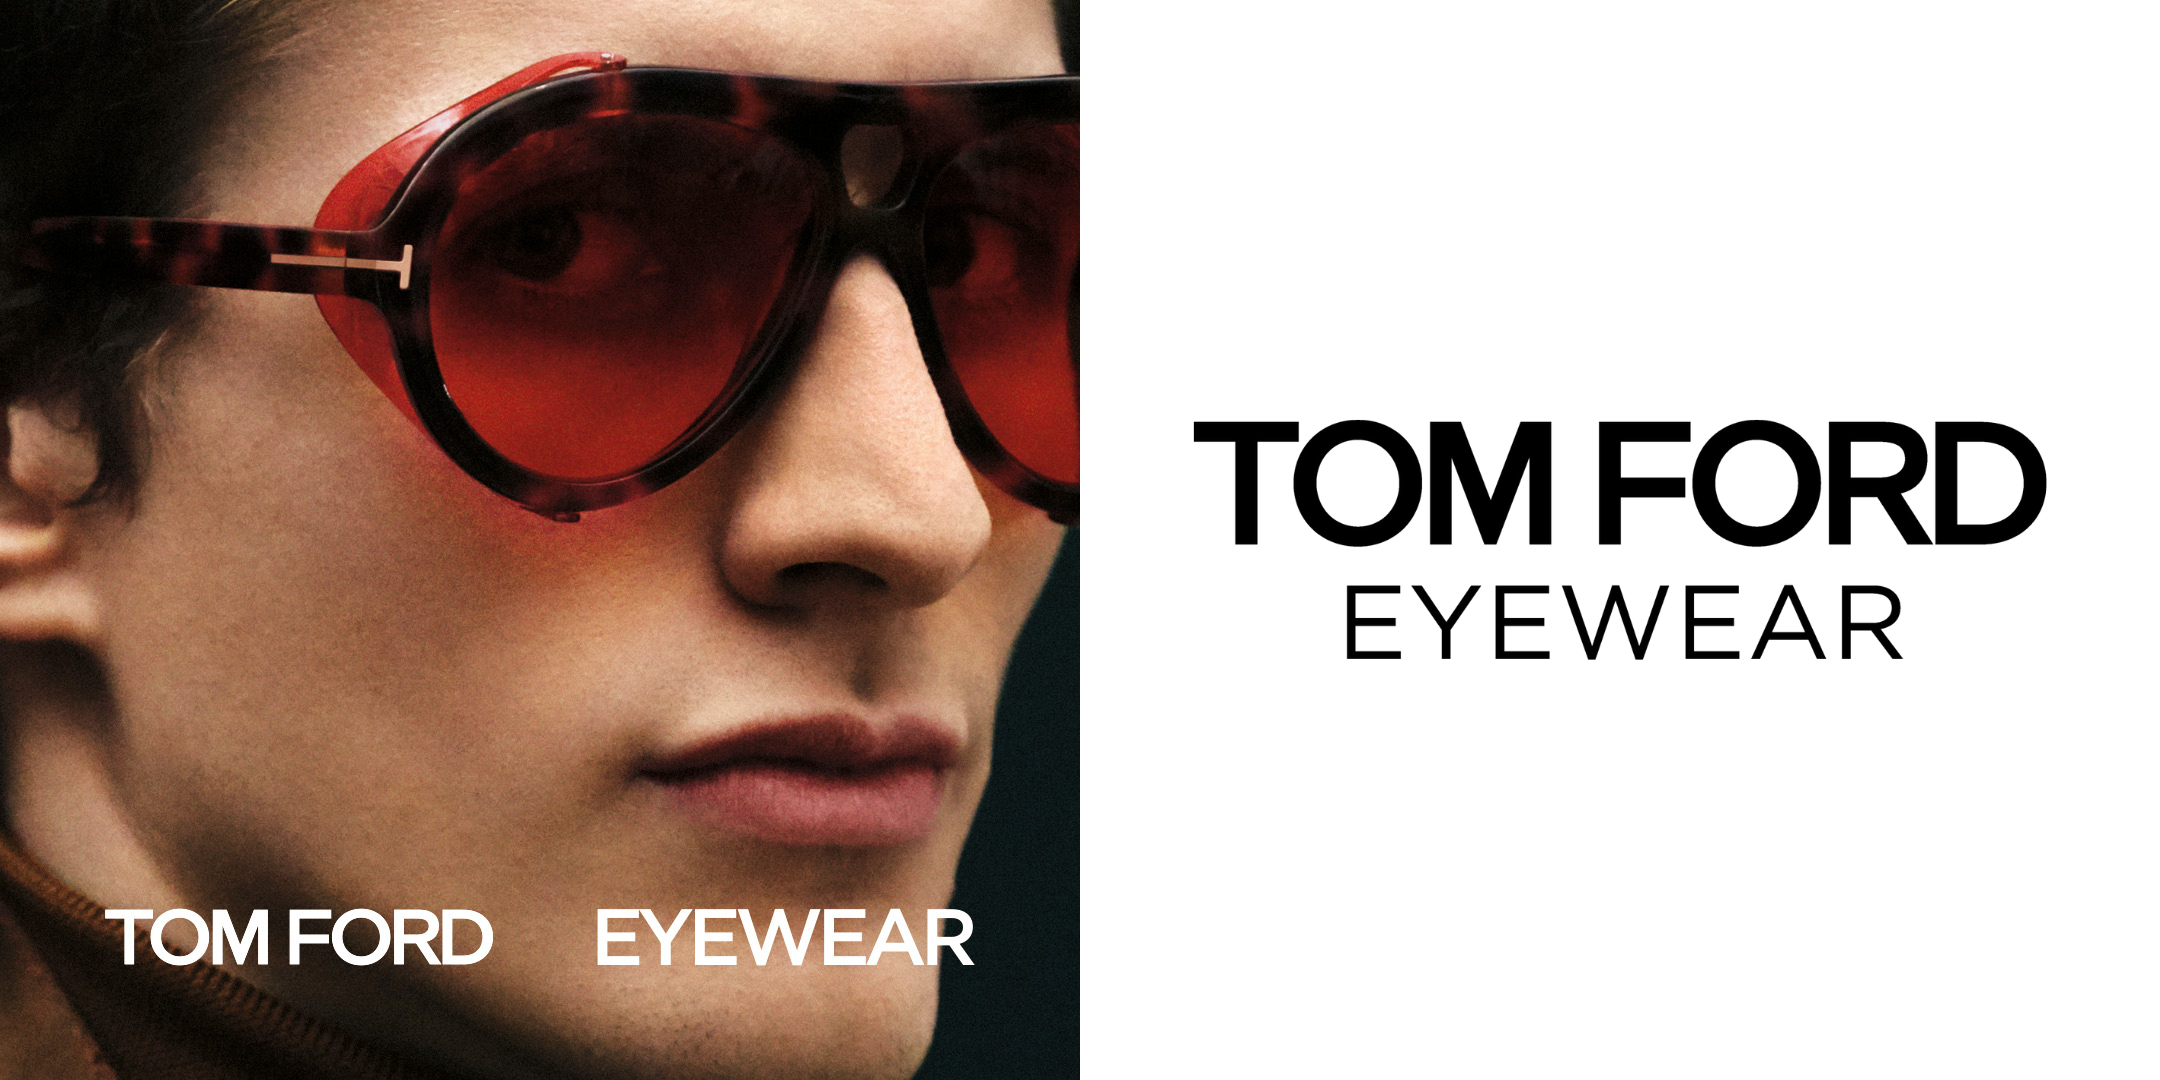 TomFord eyewear